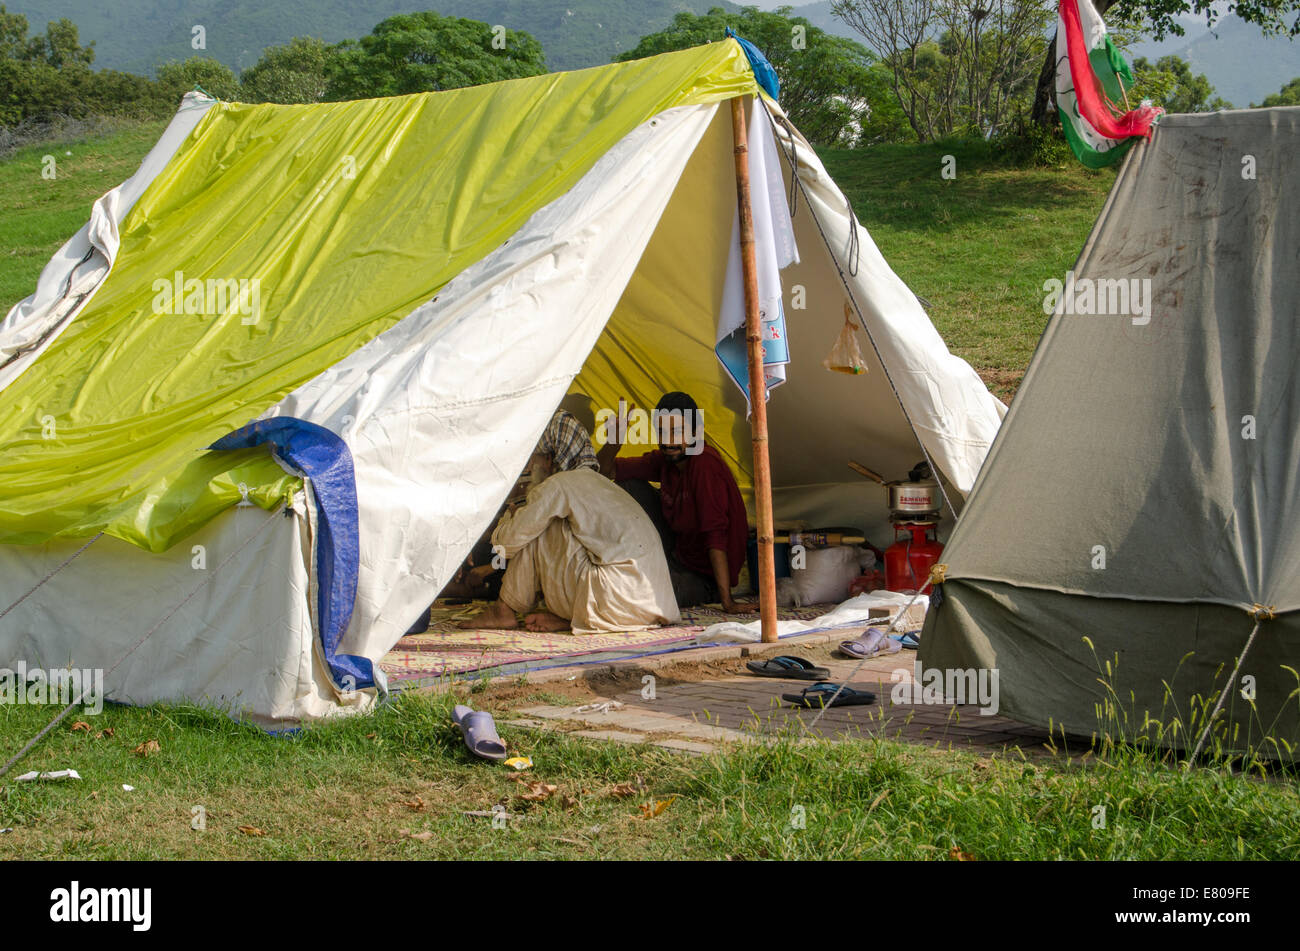 ISLAMABAD, PAKISTAN, 24 septembre 2014 : les partisans de Tahir ul Qadri mise à l'abri dans des tentes à leur protestation contre le gouvernement. Banque D'Images